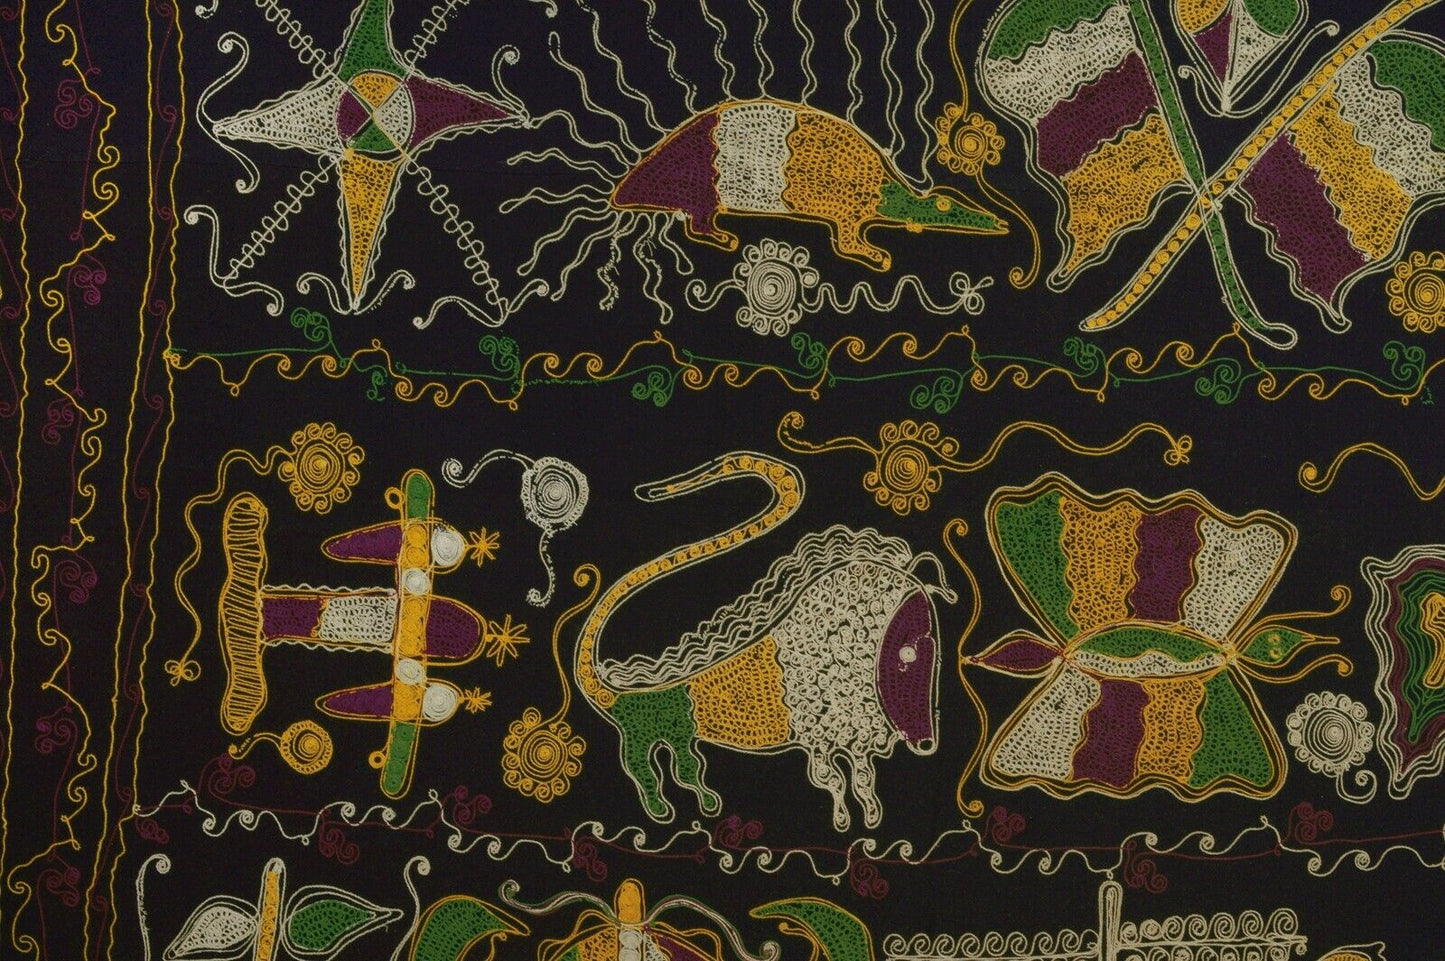 ТКАНЬ ВЕЛИКОГО Акунитан Гана Ашанти Африканская ткань ткань Этнический Племя - Трибалг